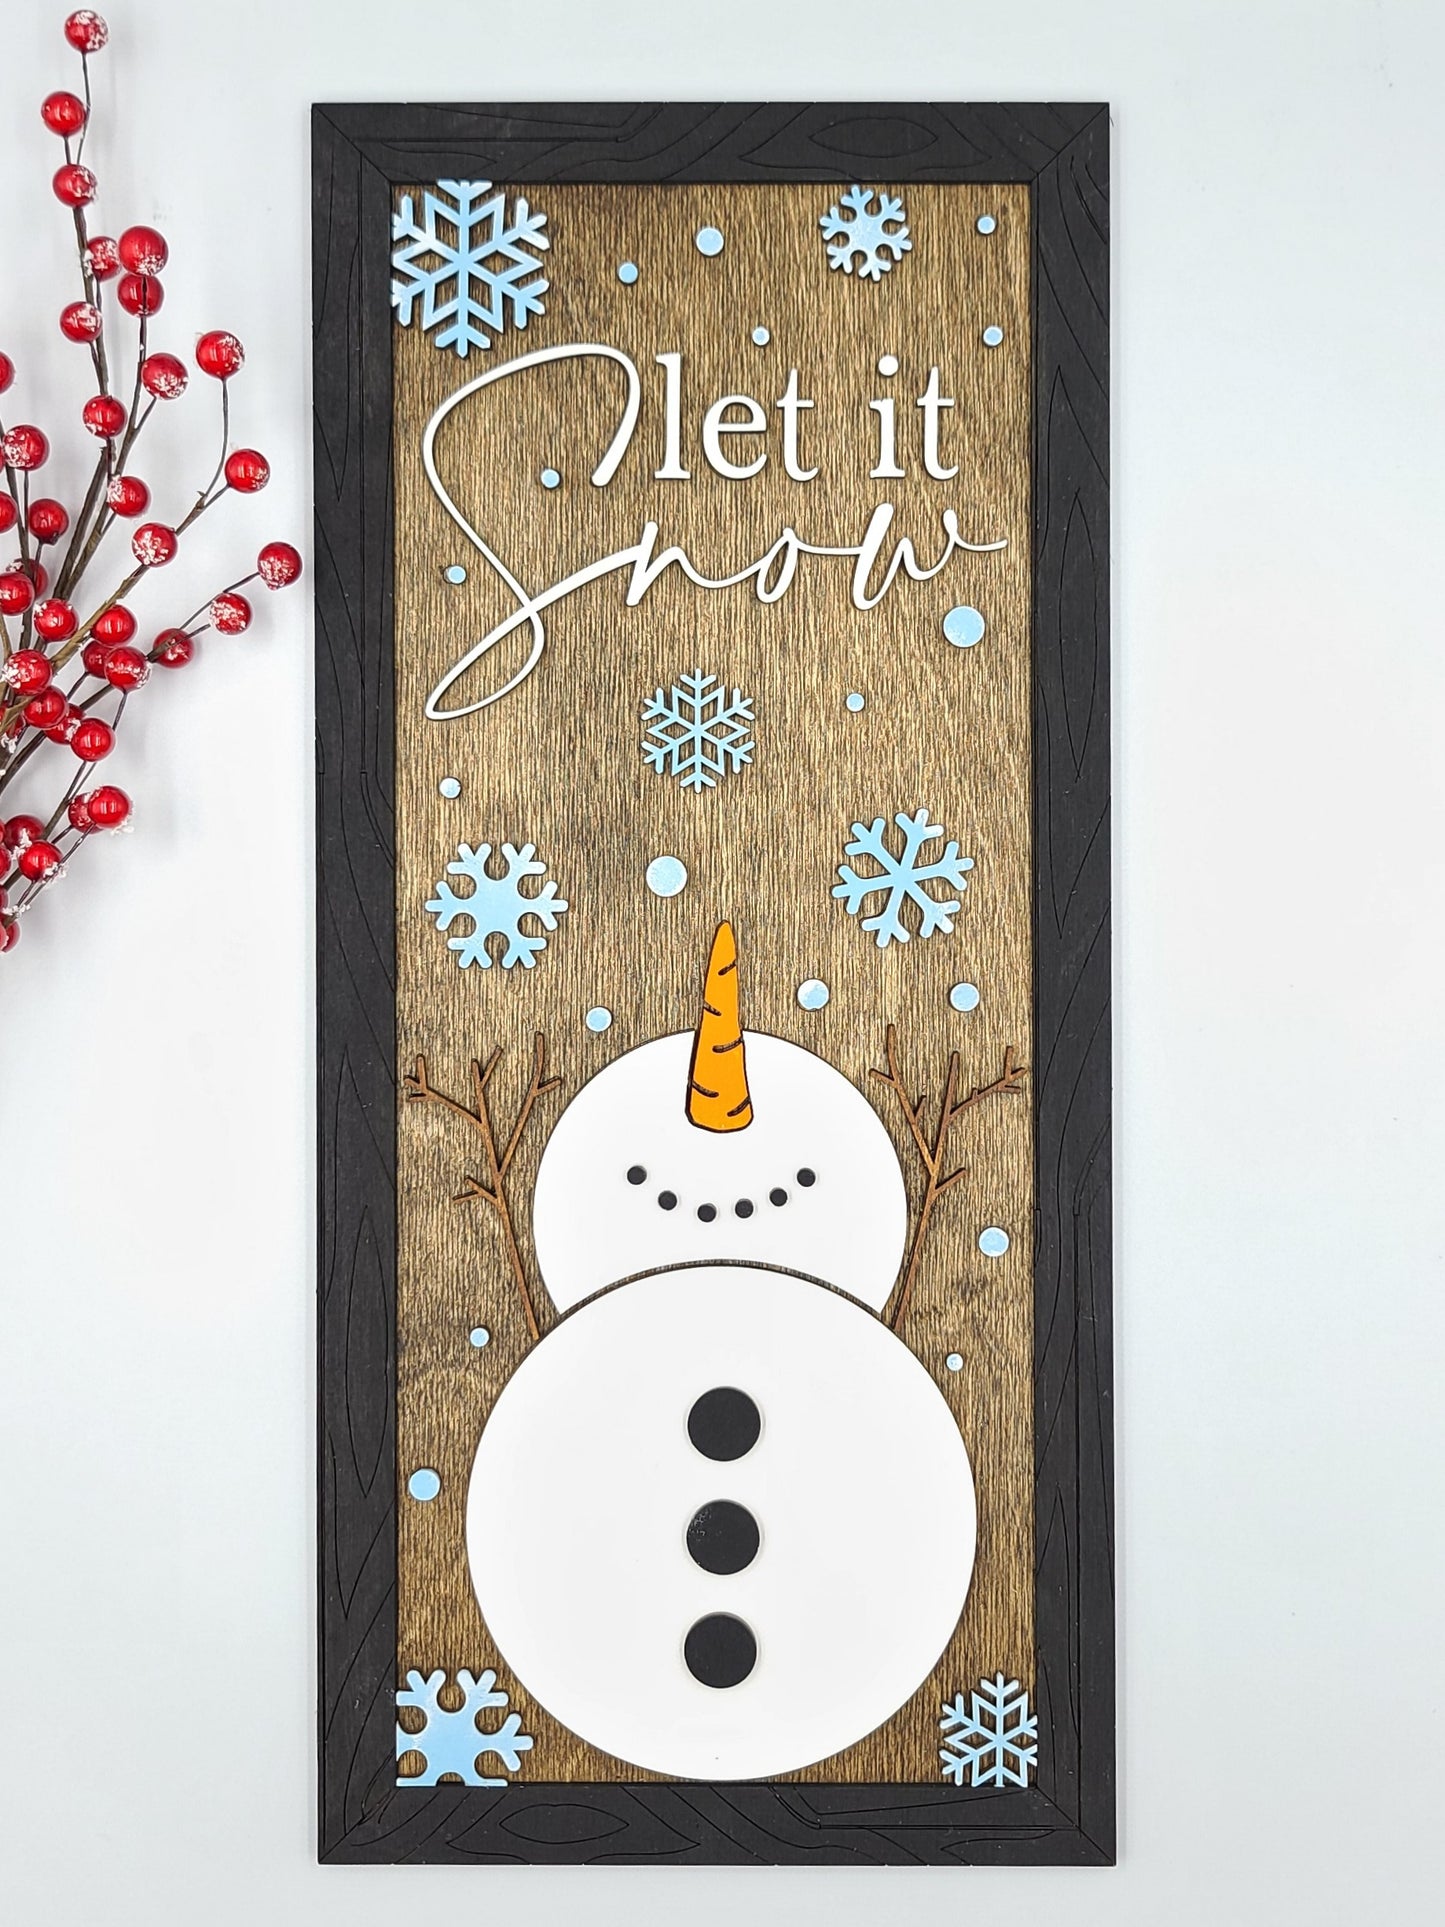 Let It Snow Snowman Sign